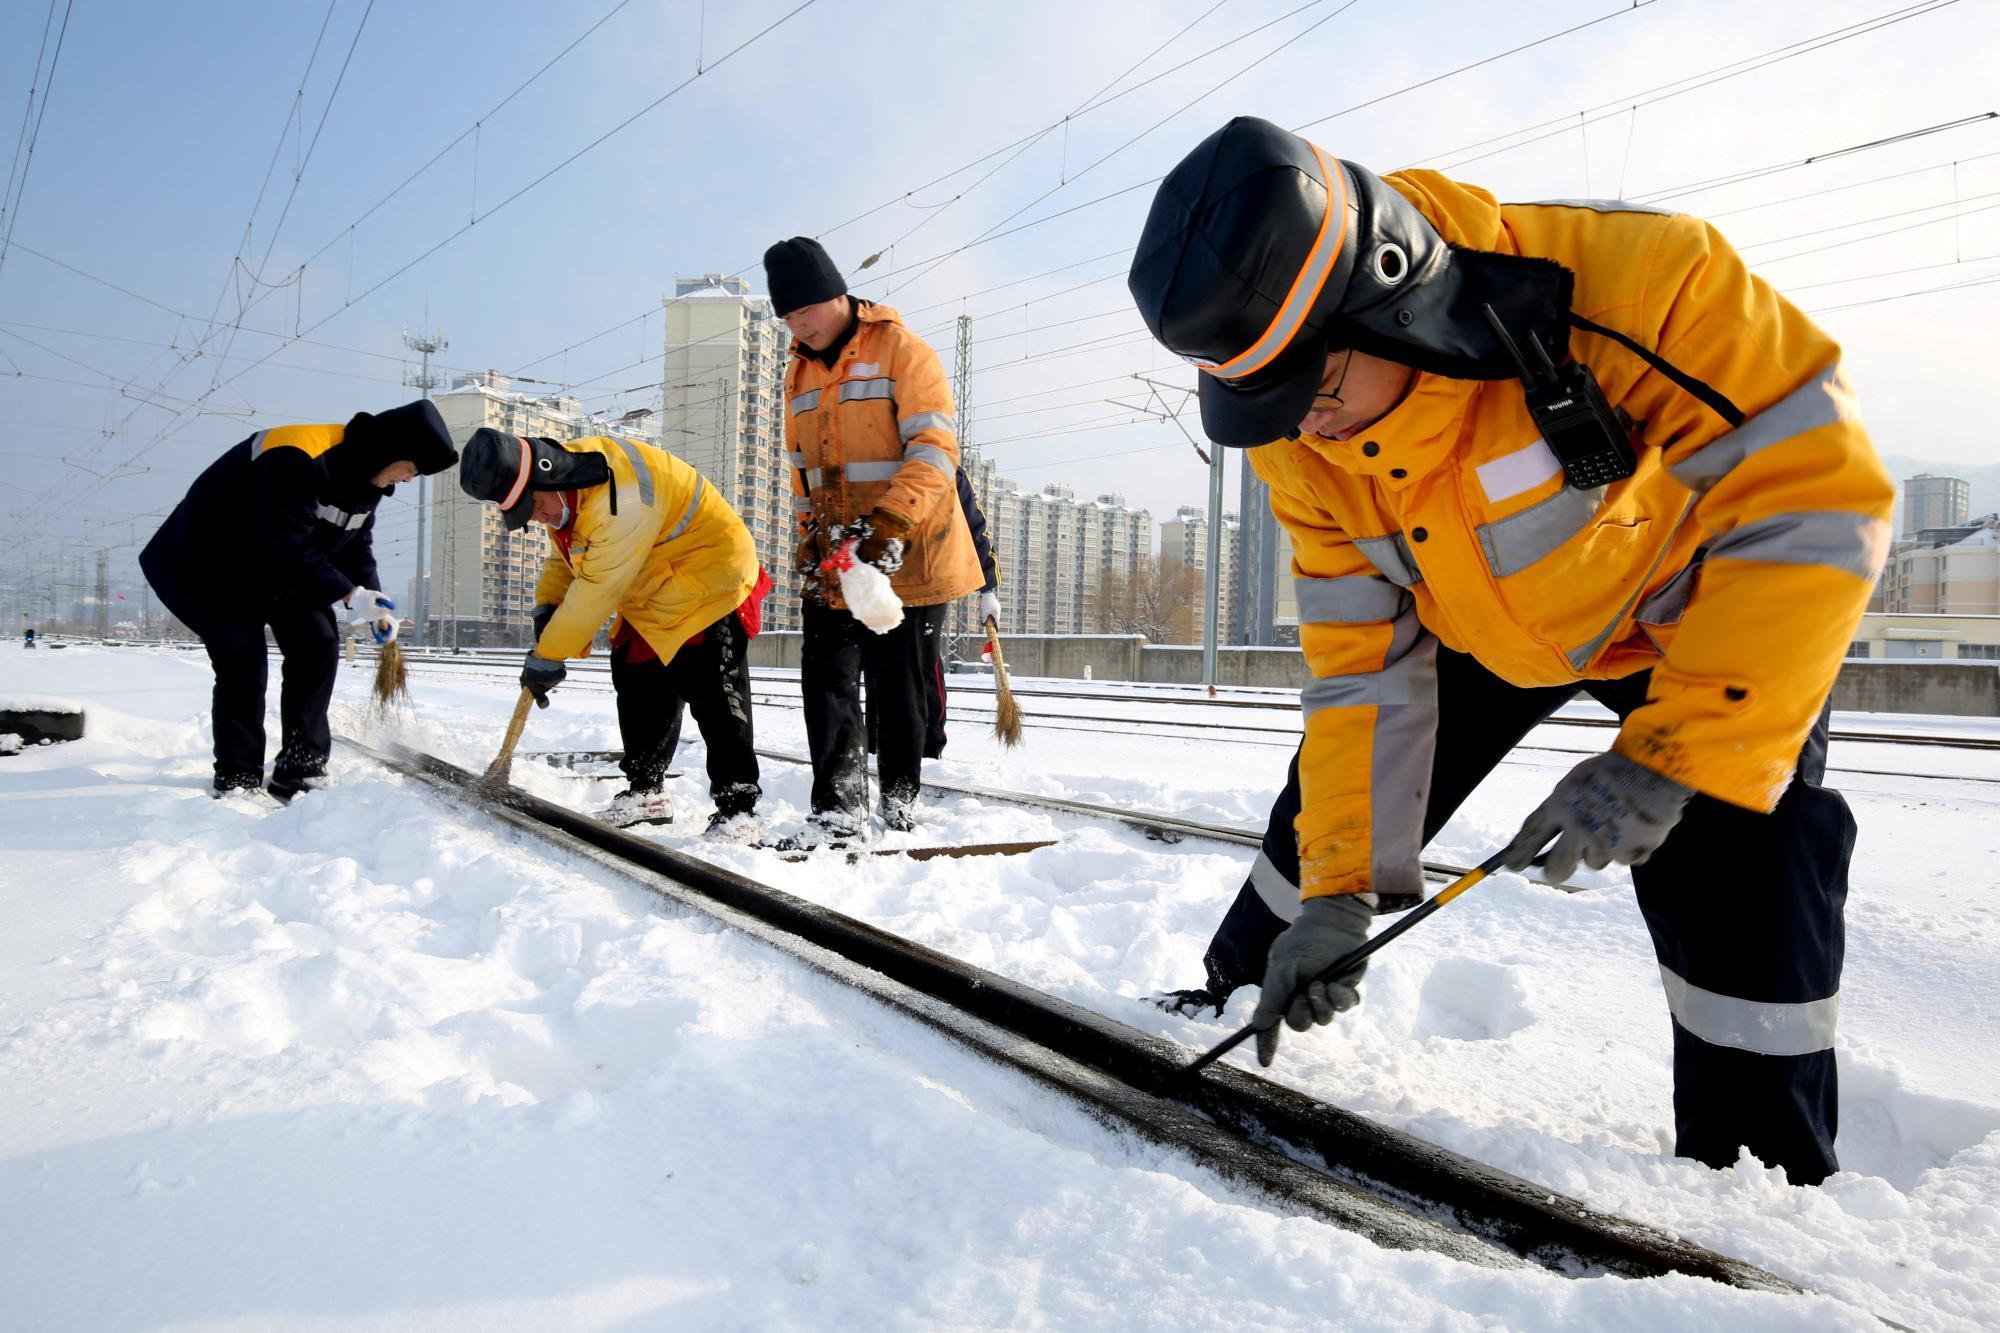 Viele Reisende durch Schnee vor chinesischem Neujahr gestrandet